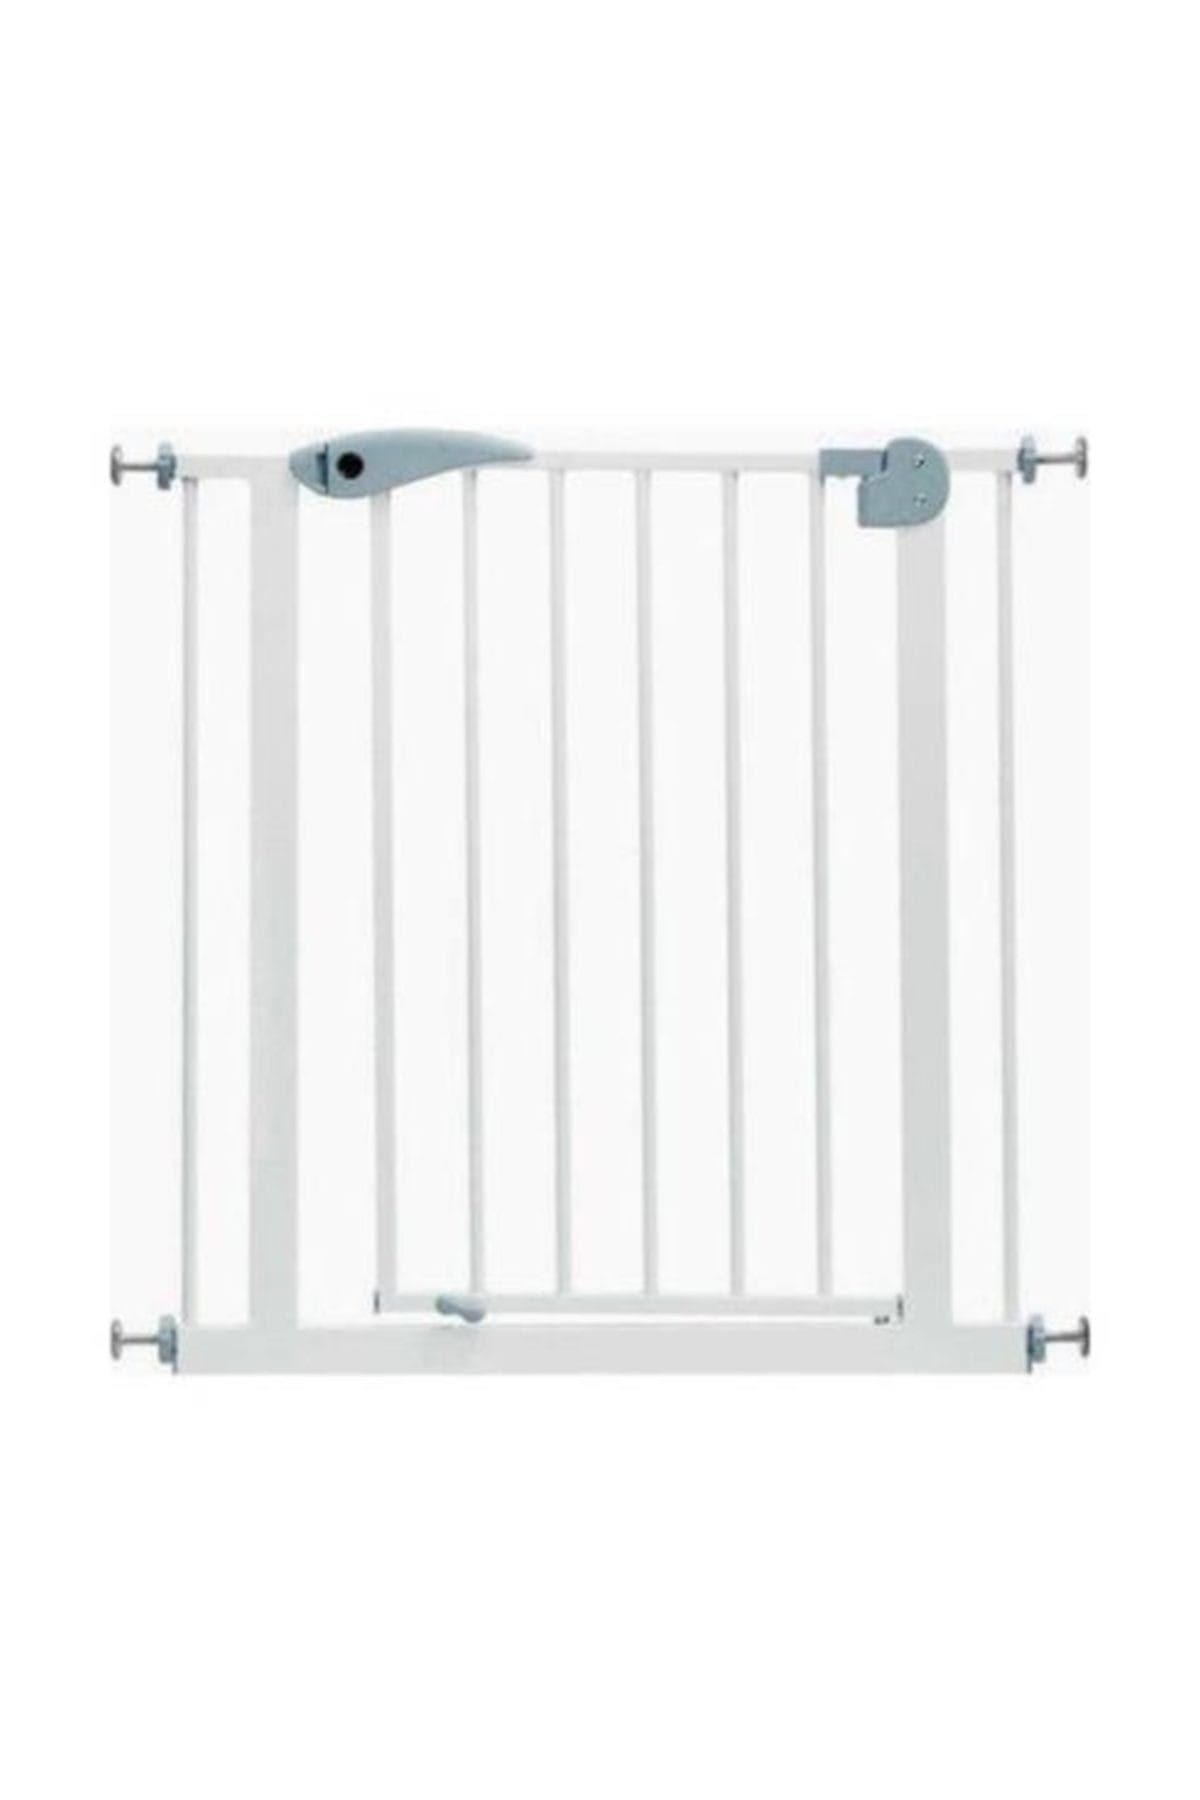 Wellgro Çocuk Güvenlik Kapısı Merdiven Korkuluğu 75-85 cm arası için uygun - Beyaz